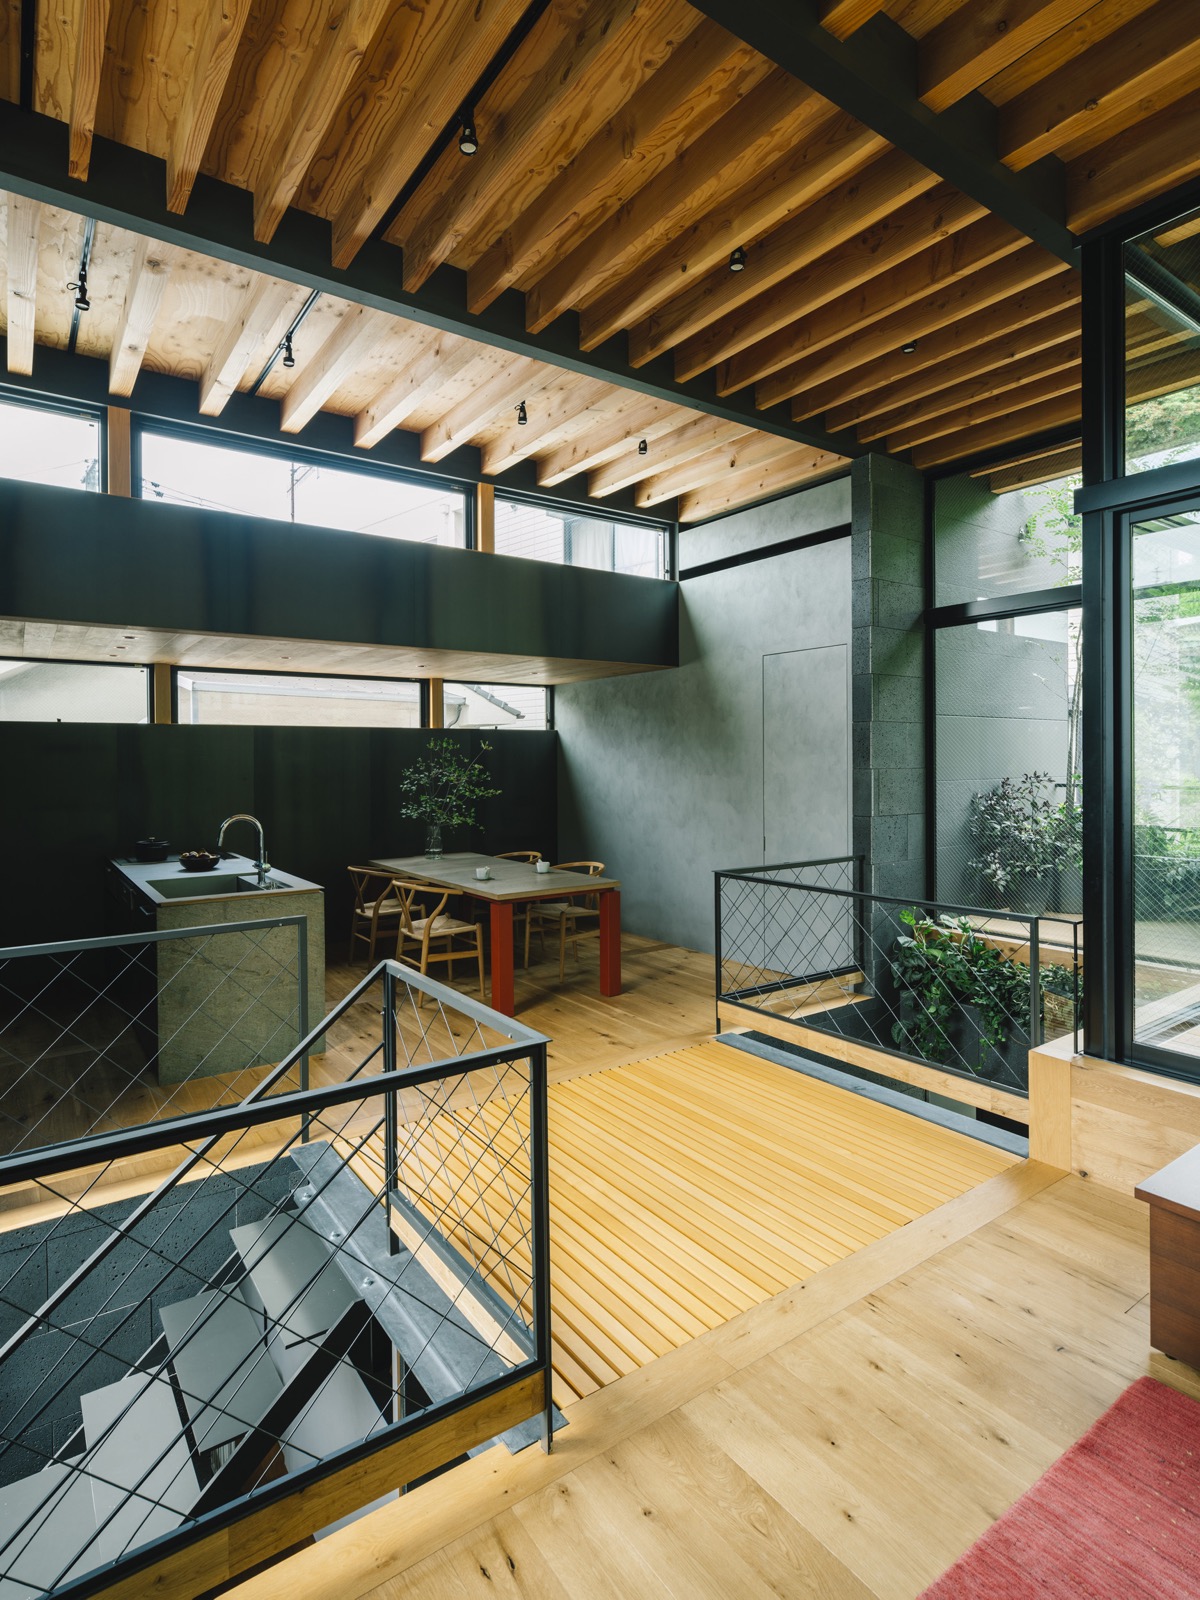 Phong cách công nghiệp hiện đại, tối giản mang đến cái nhìn độc đáo, thú vị cho không gian sống trong ngôi nhà Nhật.